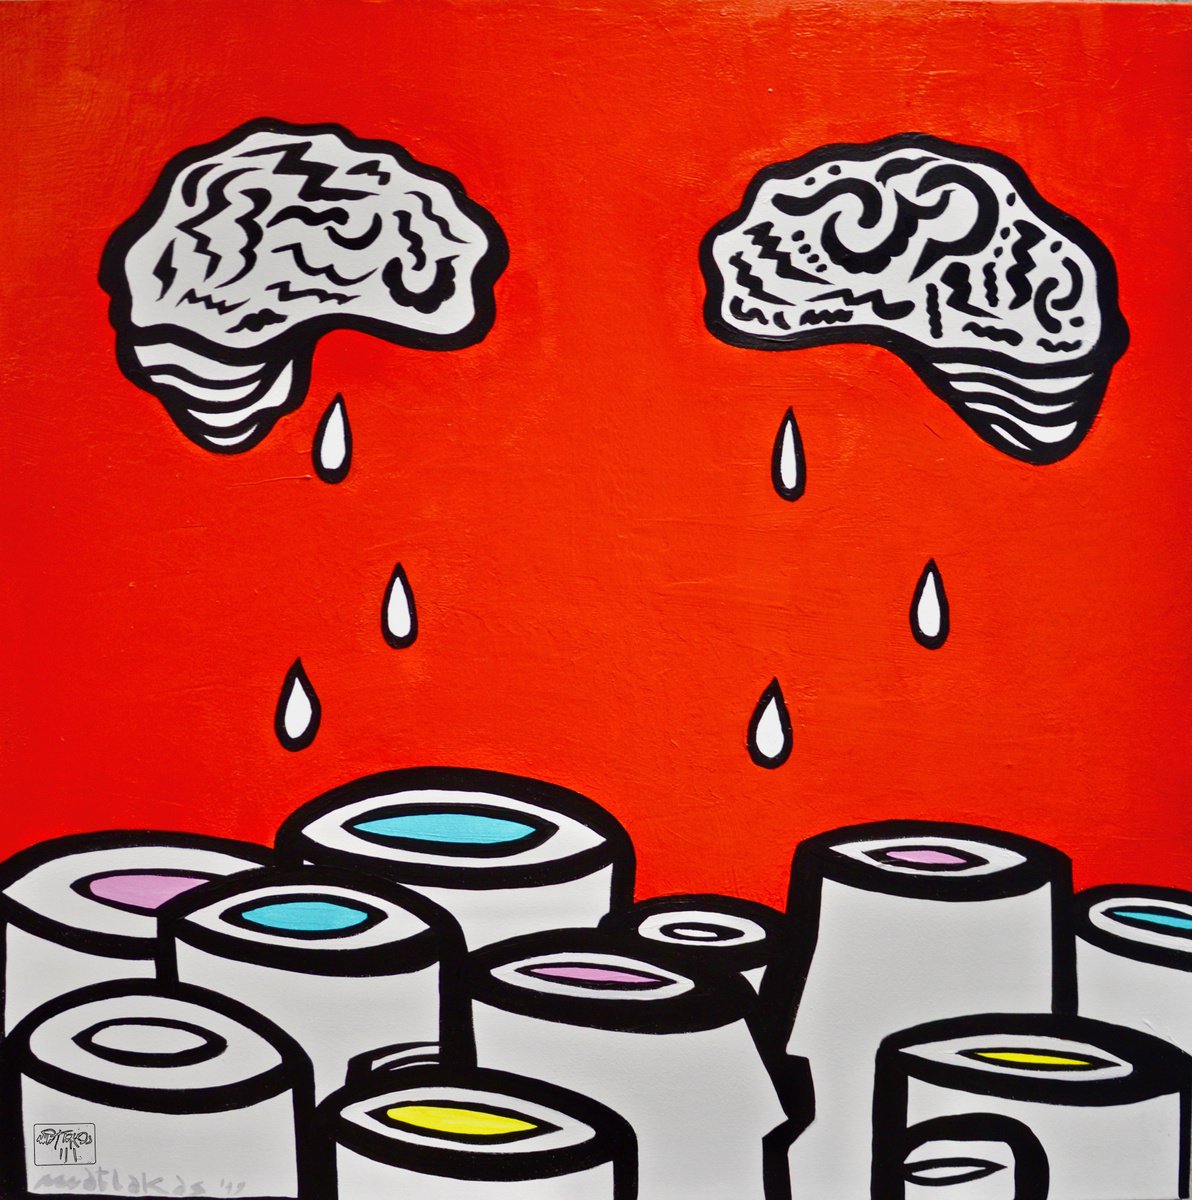 Brainwash by Riccardo Matlakas